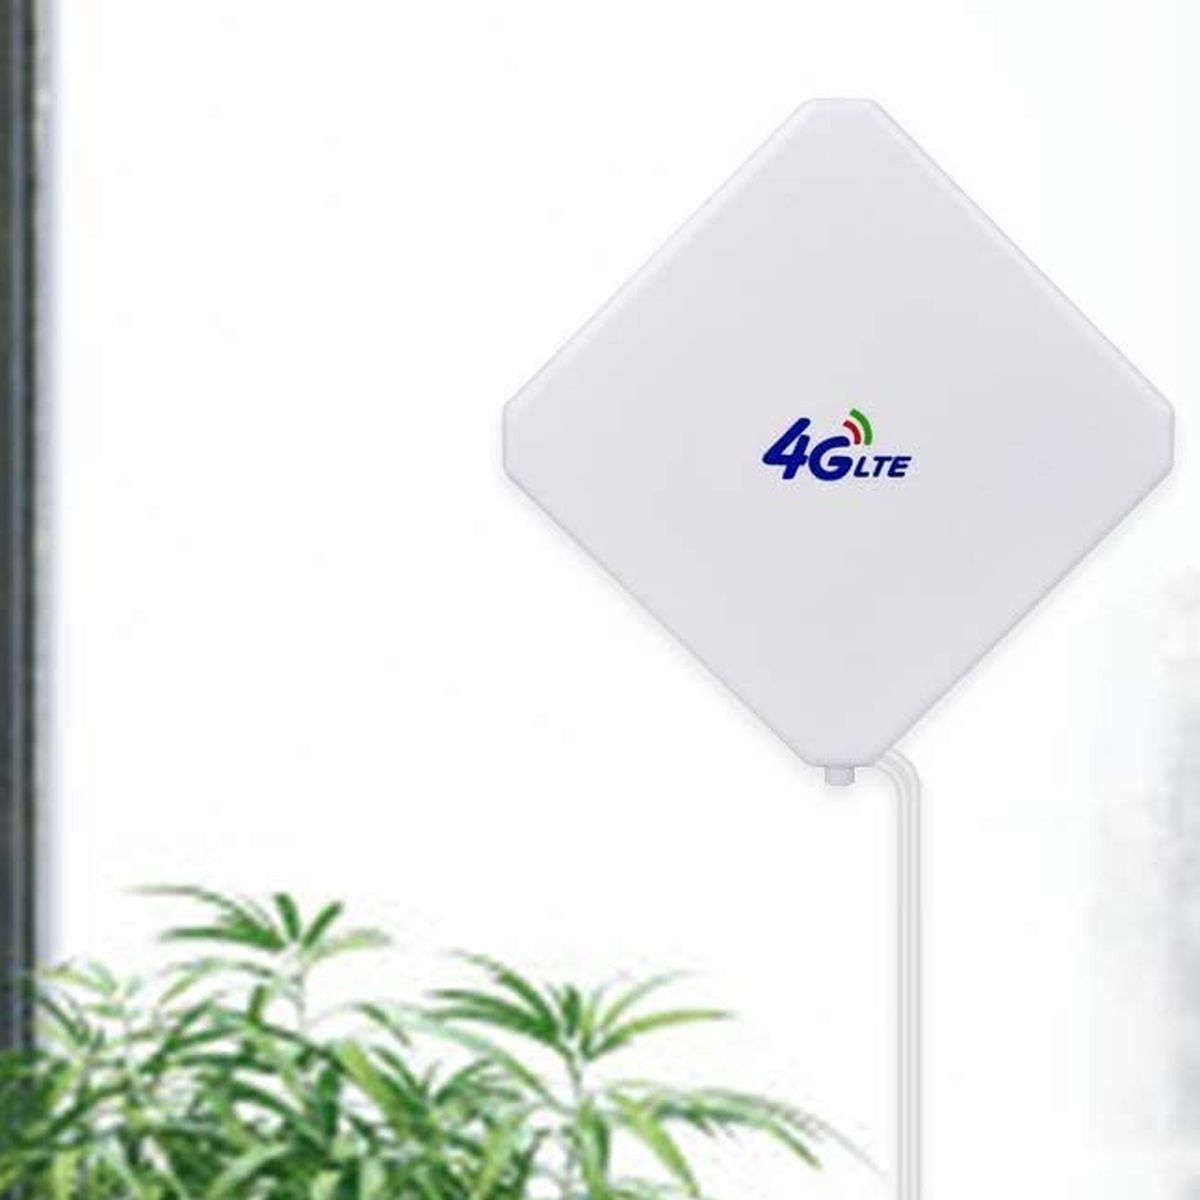 Antena 4G para mejorar la señal por 21 euros